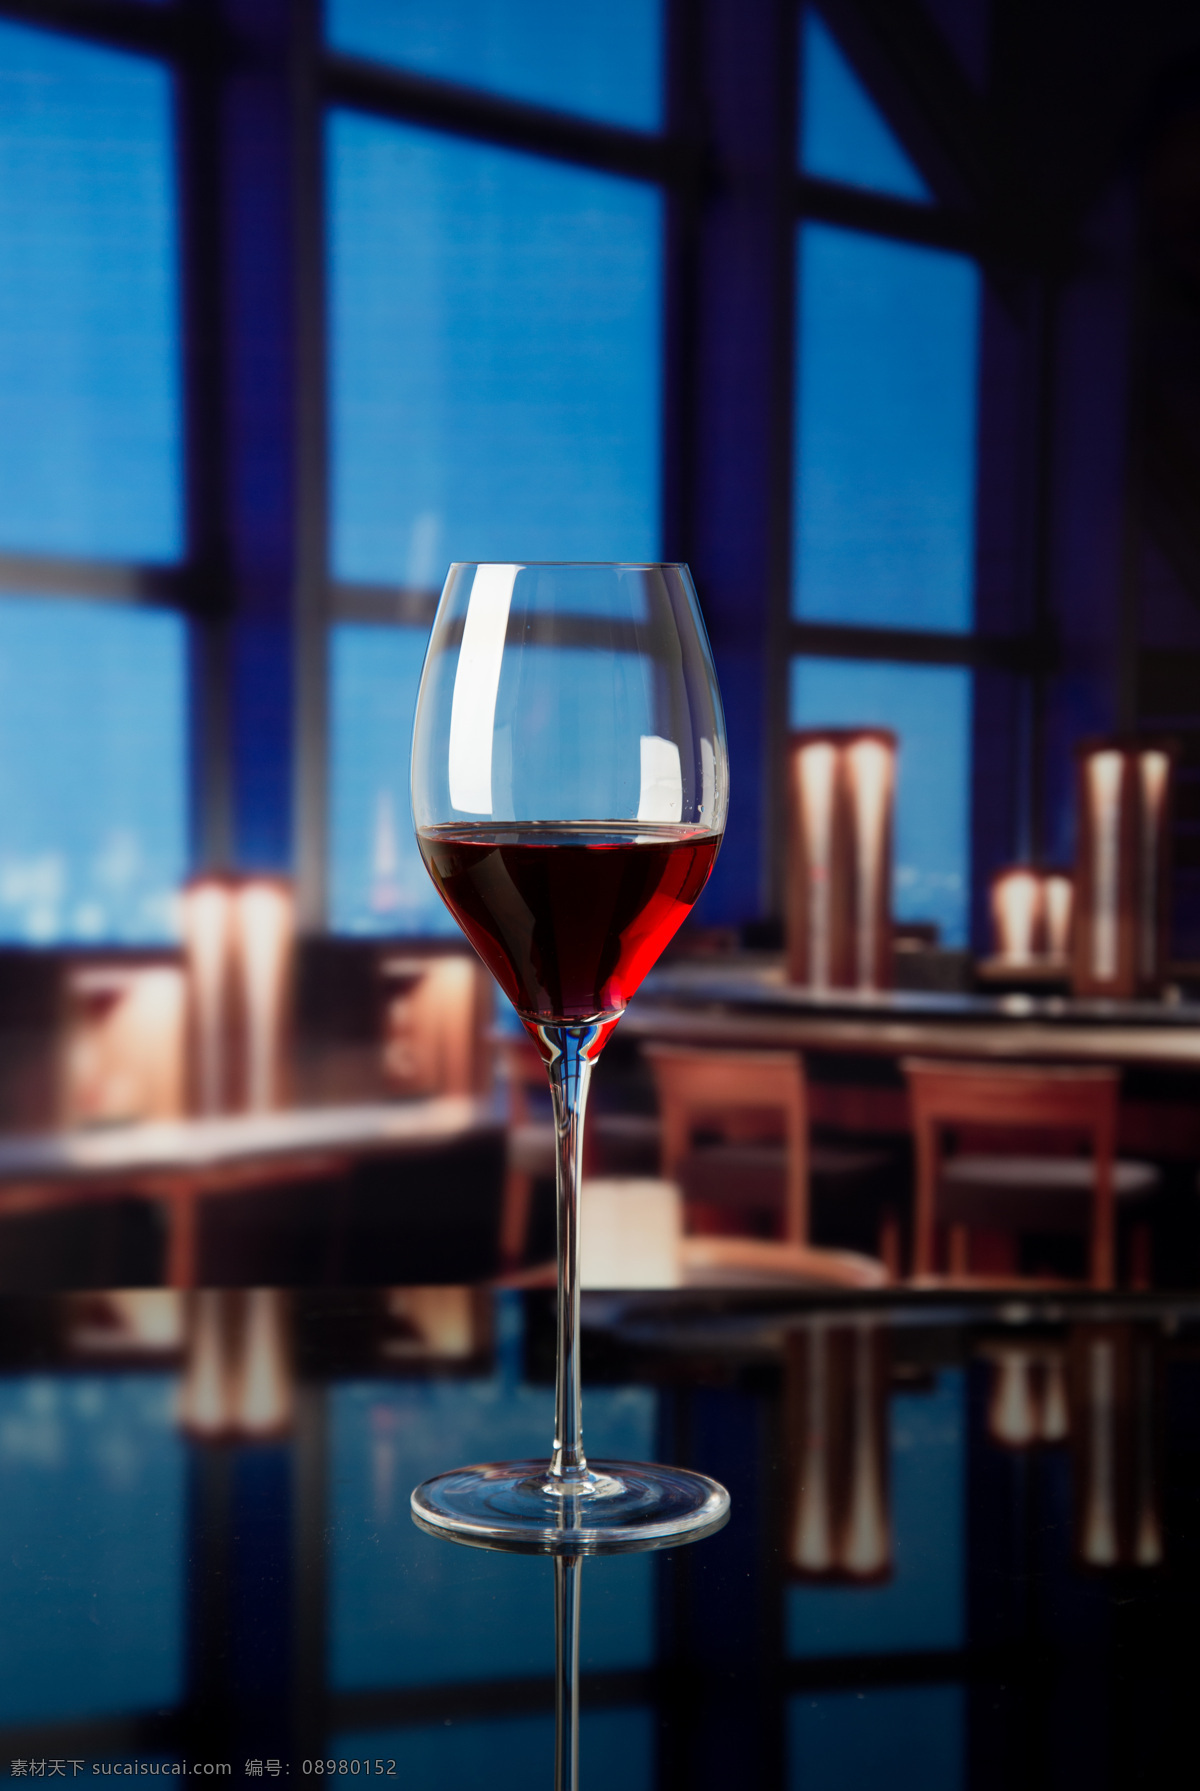 玻璃器皿摄影 玻璃杯 红酒杯 酒杯 红酒 酒具 玻璃酒杯 高脚杯 餐饮美食 饮料酒水